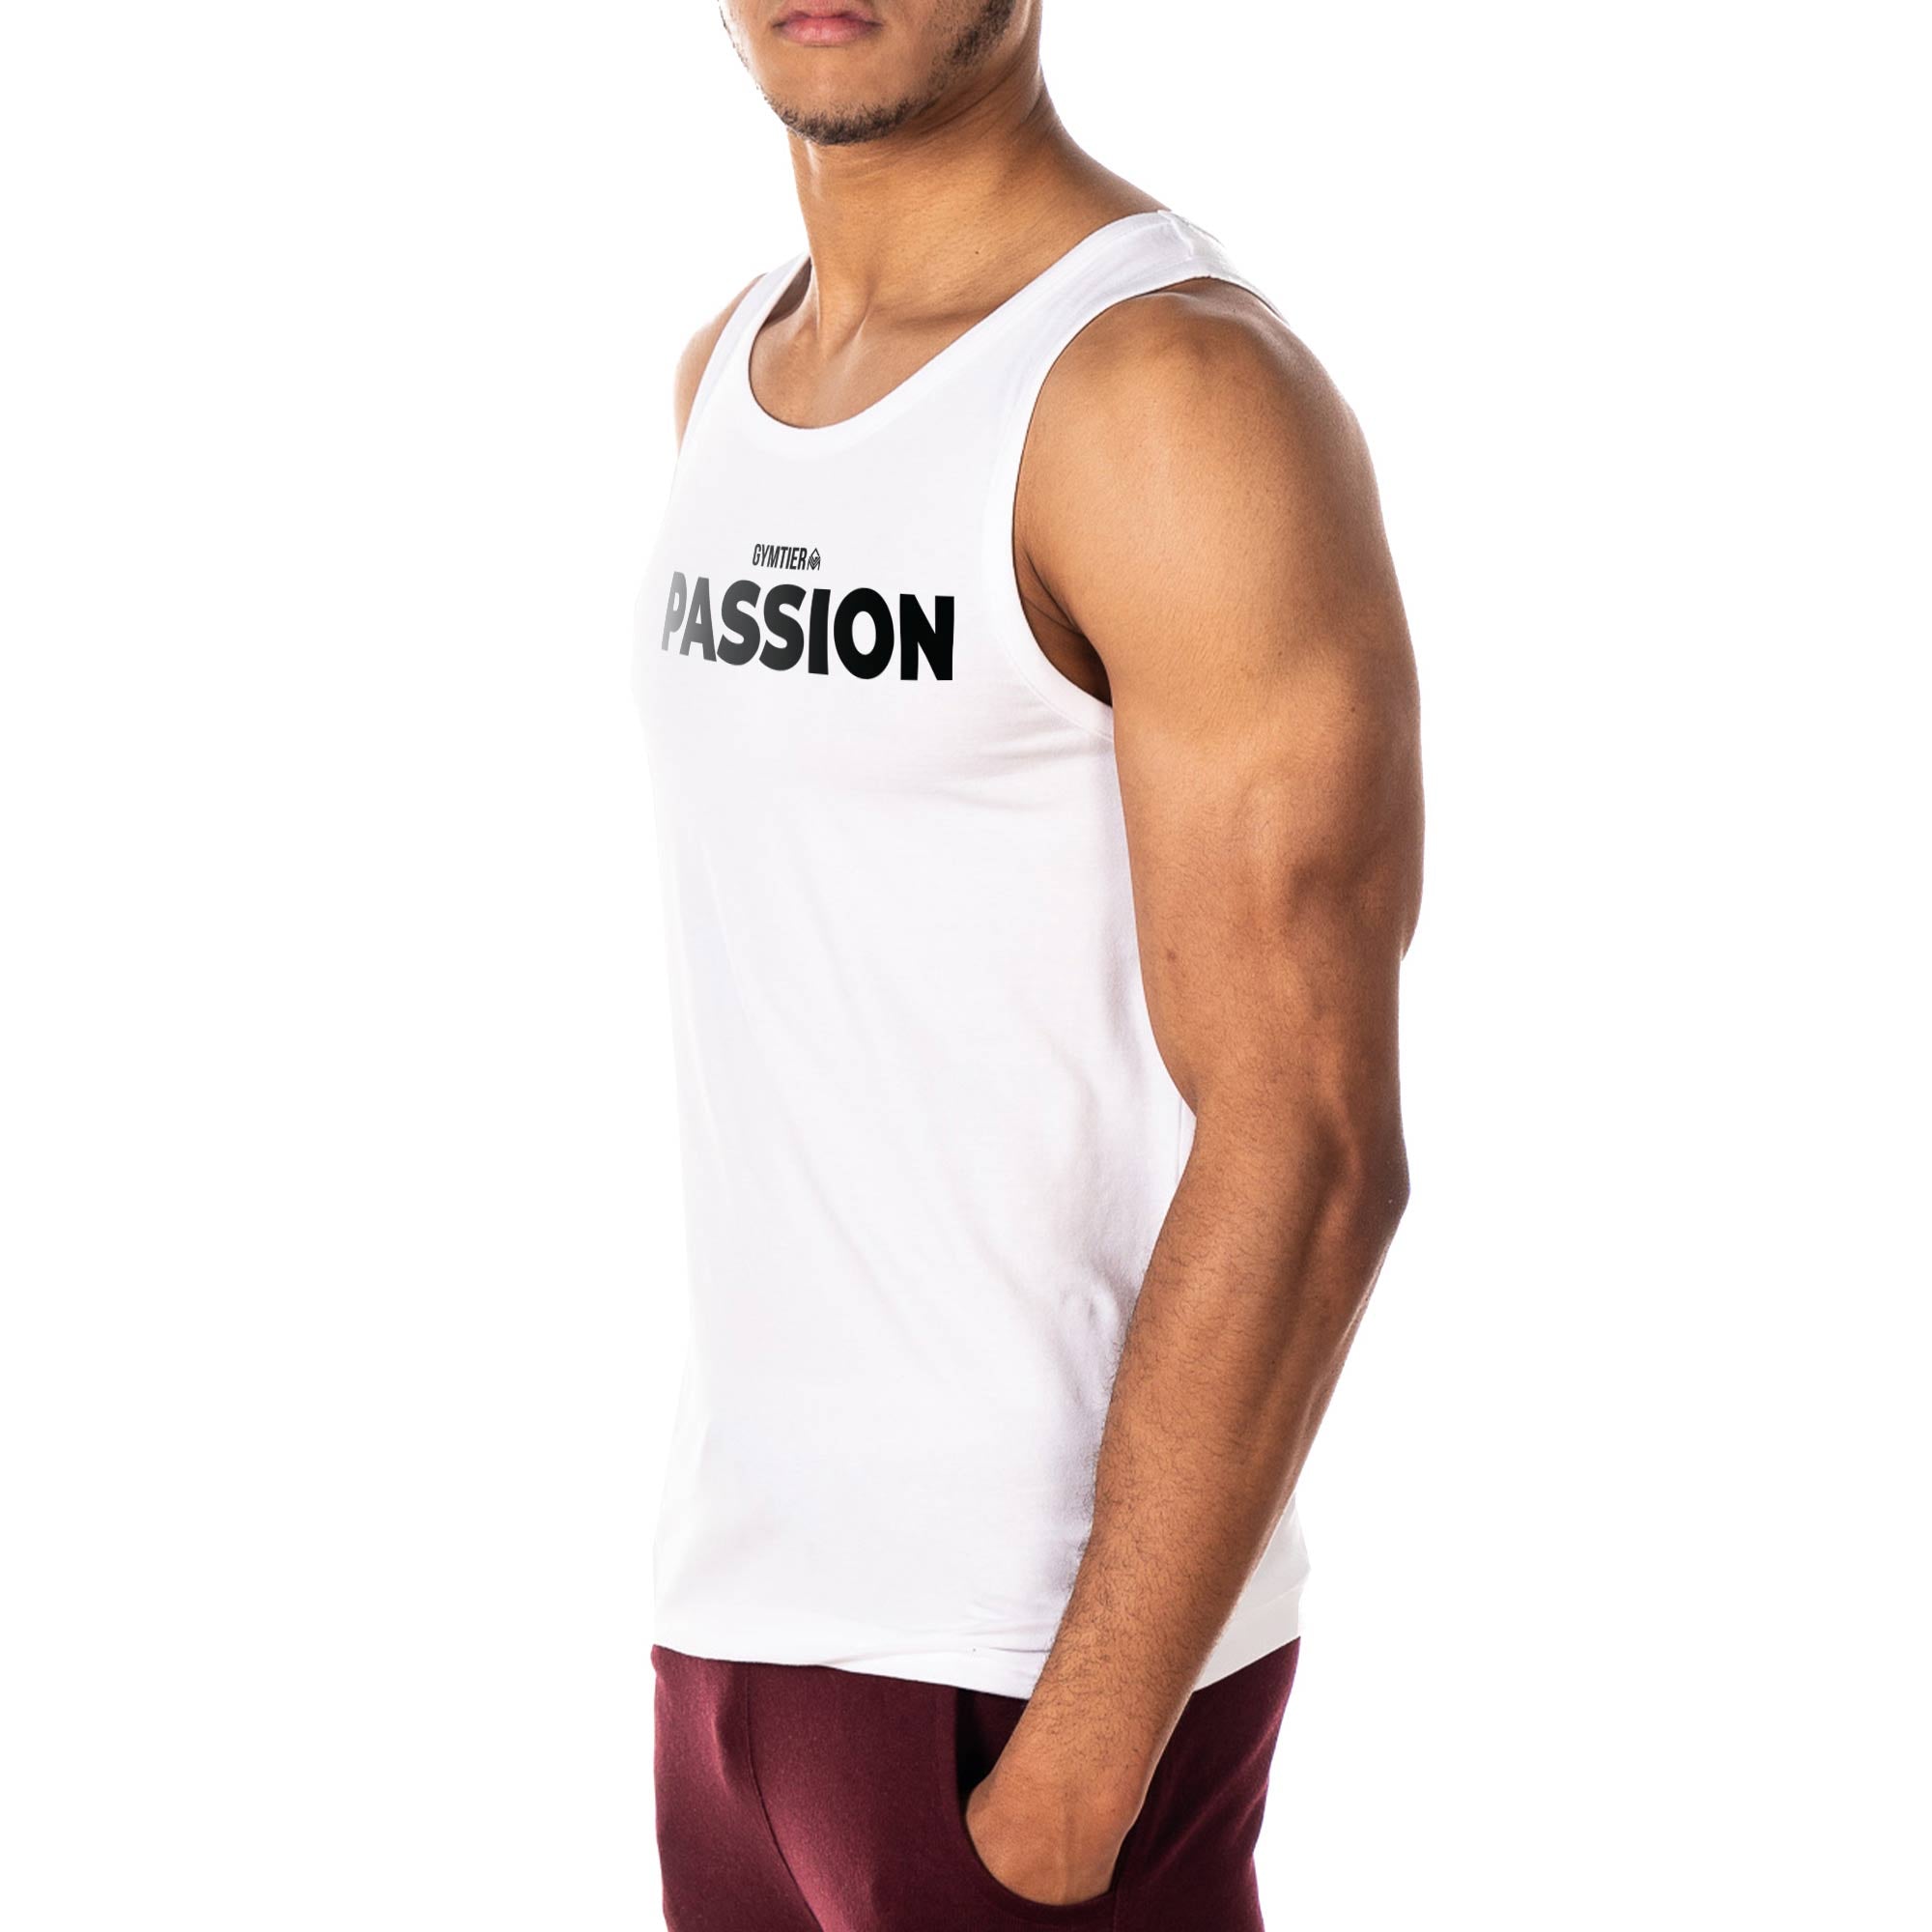 GYMTIER Passion Gym Vest